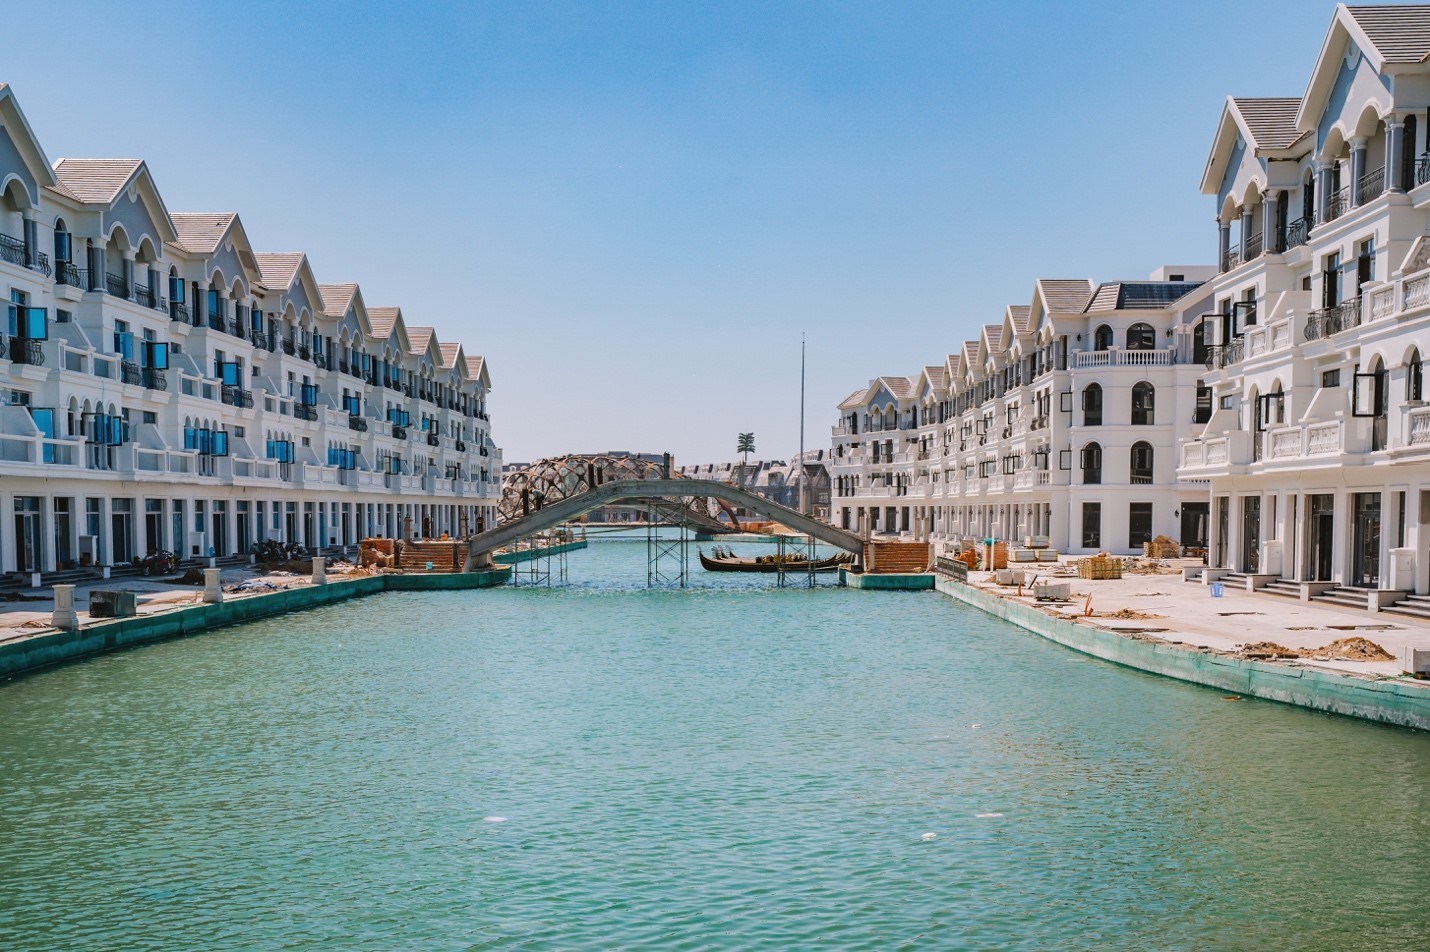 Hình ảnh thực tế tại dự án cho thấy kênh đào Venice đang ở trong những công đoạn hoàn thiện cuối cùng .